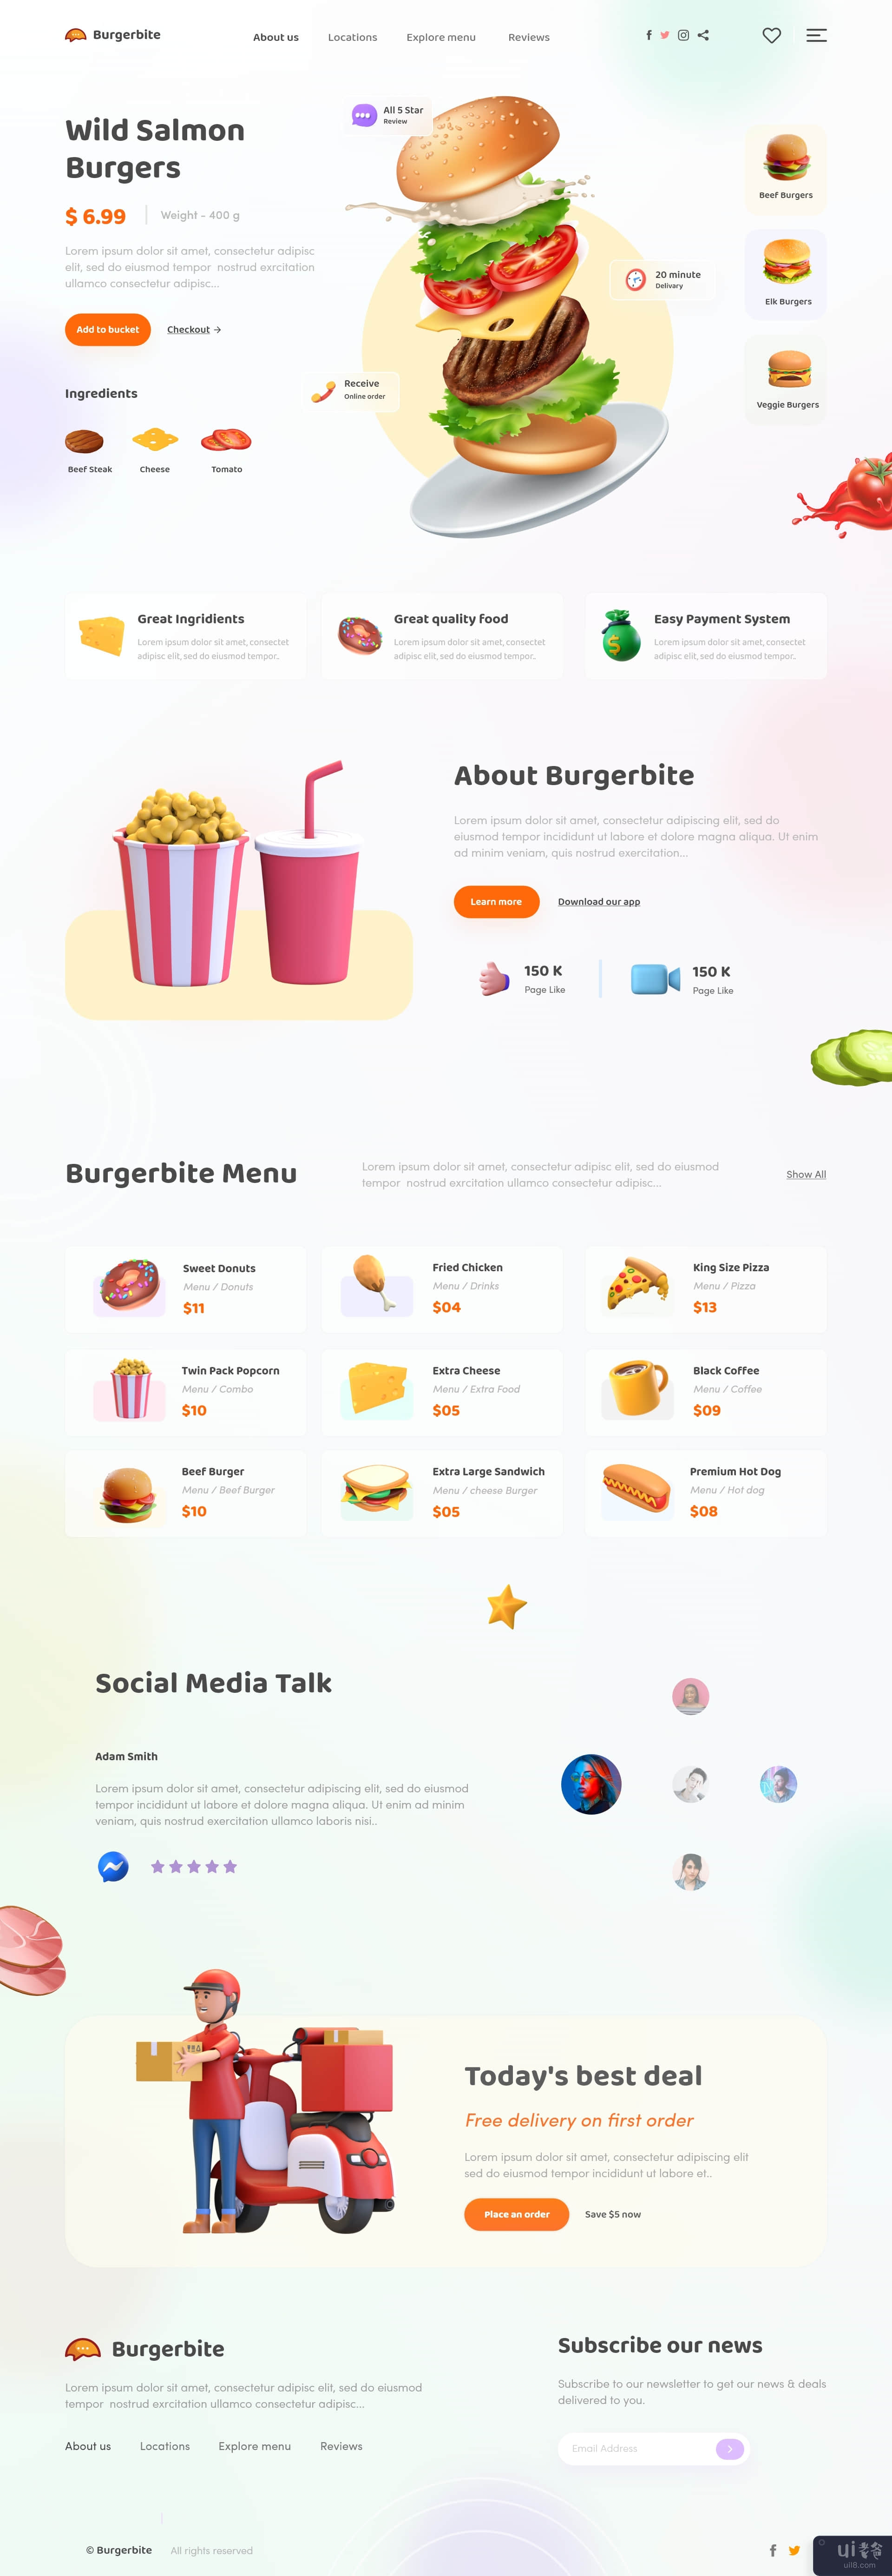 食品或餐厅的网站模板设计(Website template design for Food or restaurant)插图